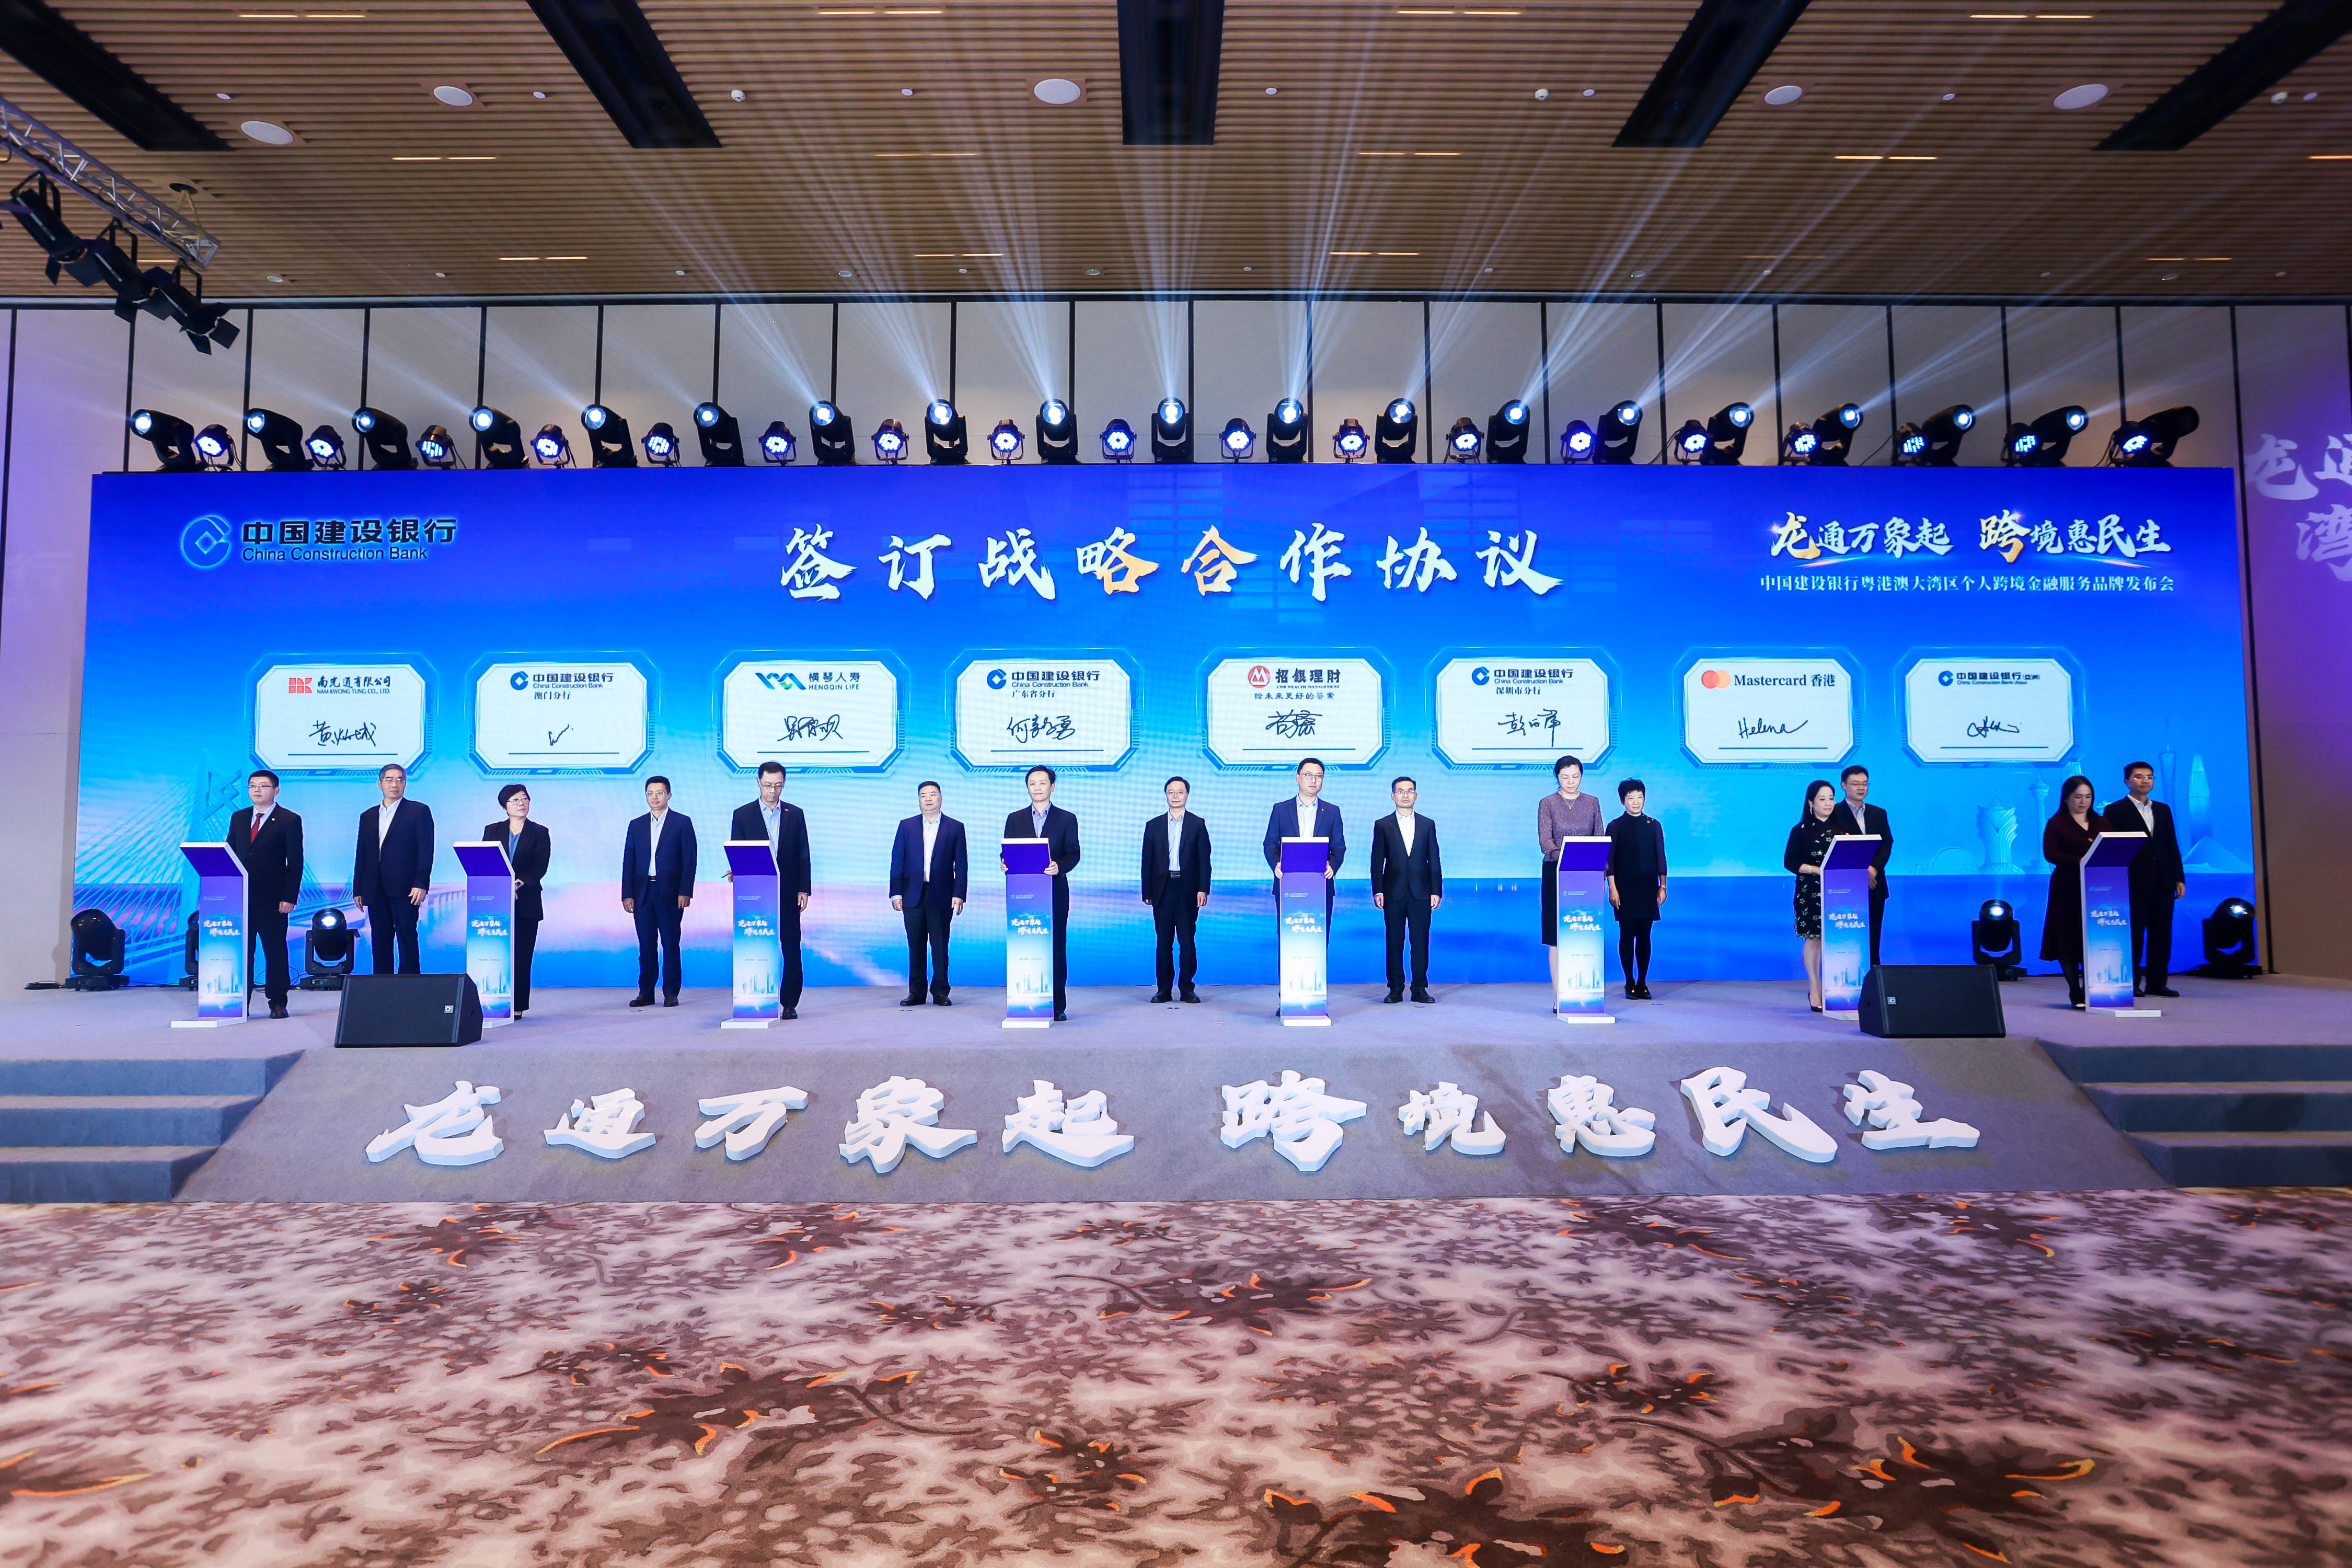 中国建设银行正式发布“龙通湾区”个人跨境金融服务品牌